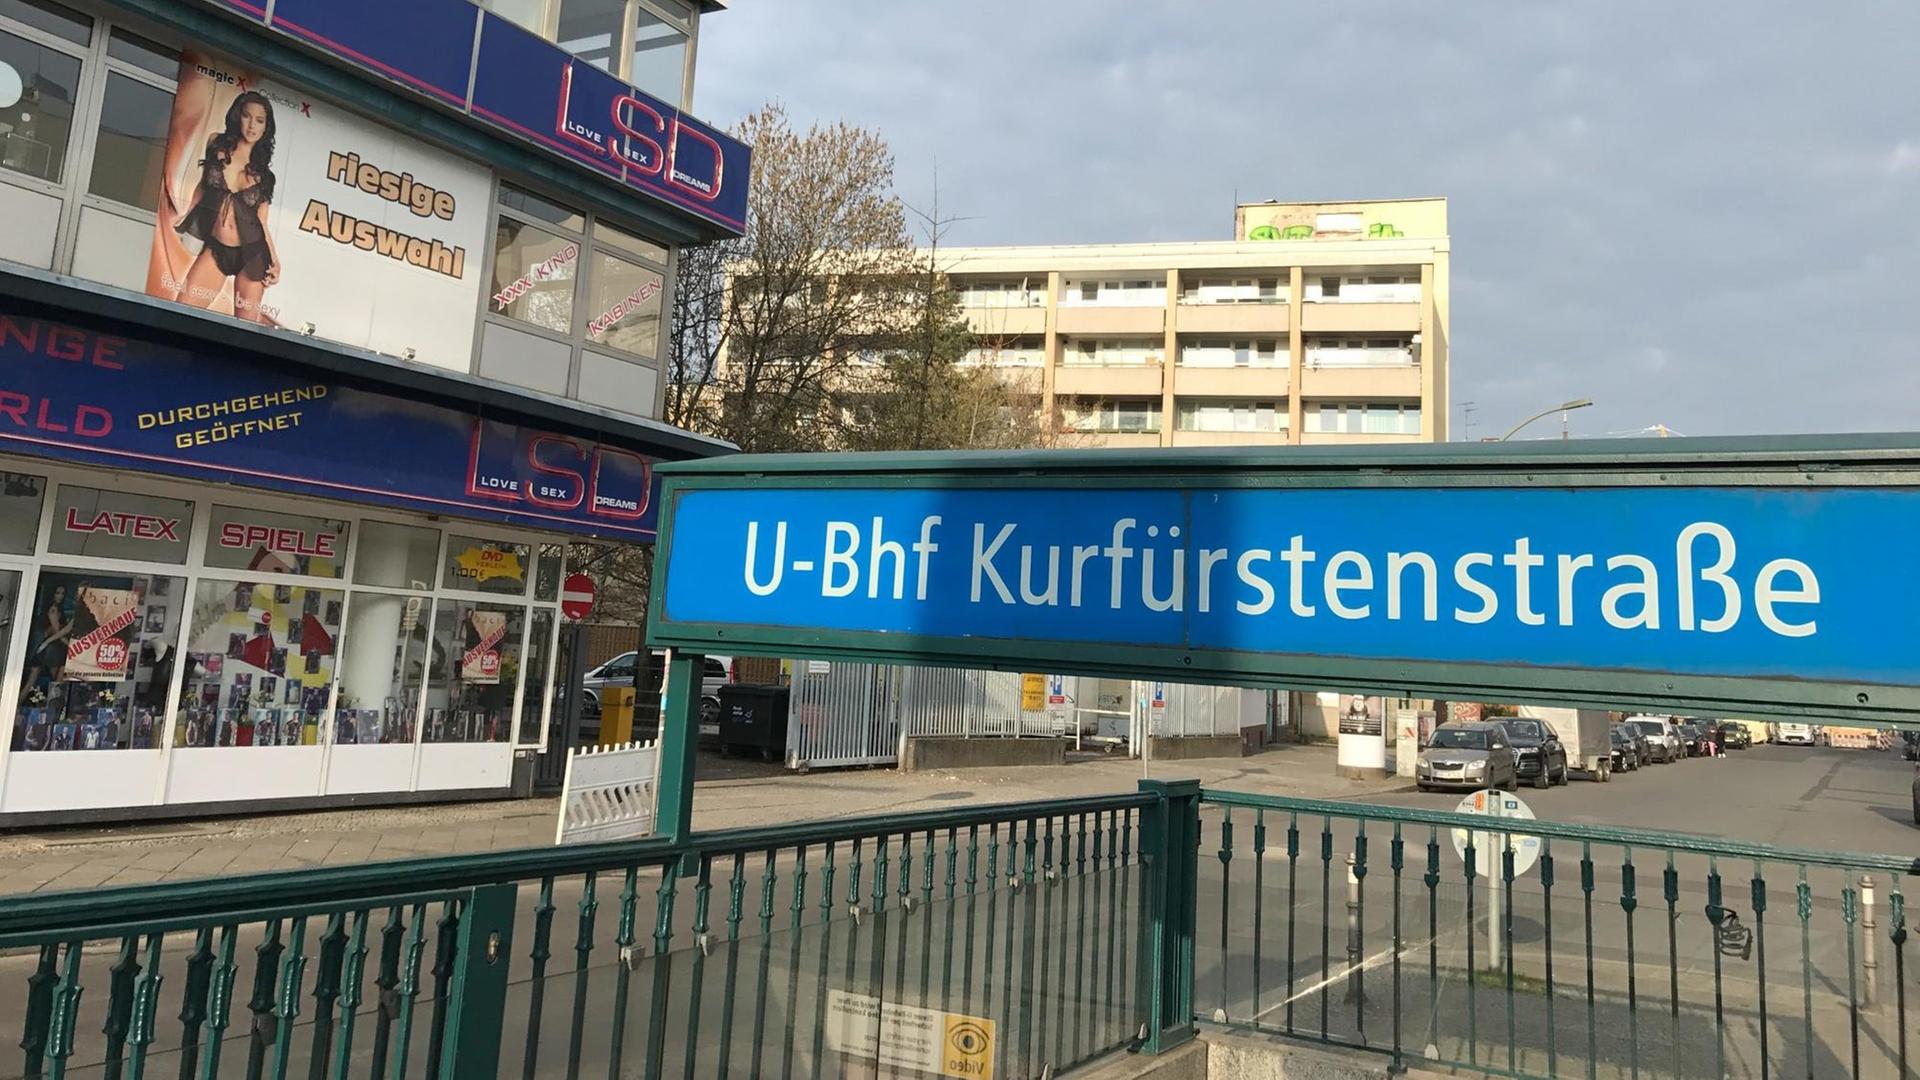 Die Kurfürstenstraße im Berliner Stadtteil Schöneberg. Hier gibt es einen Straßenstrich, der immer wieder in der Presse thematisiert wird.